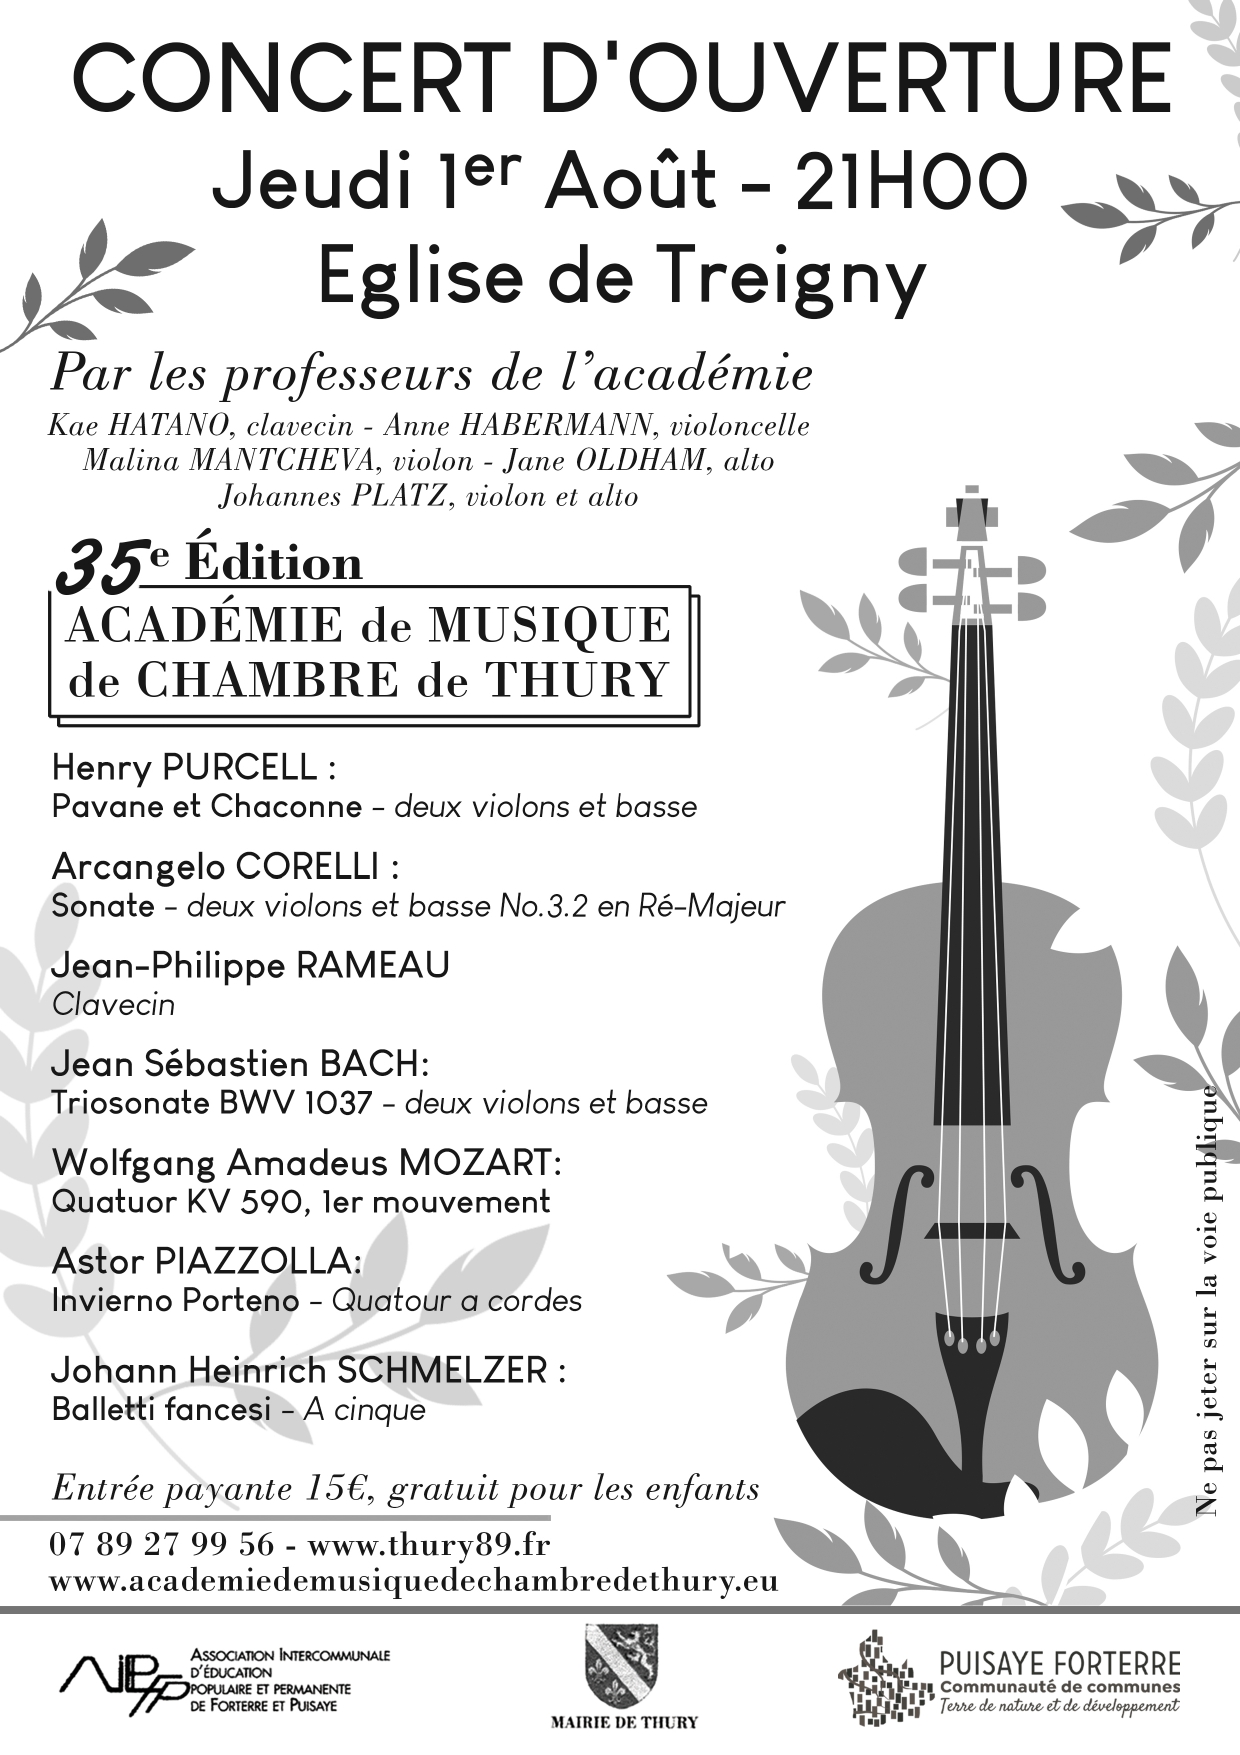 Concert d'ouverture de l'Académie de Musique de Chambre de Thury @ Église | Treigny-Perreuse-Sainte-Colombe | Bourgogne-Franche-Comté | France